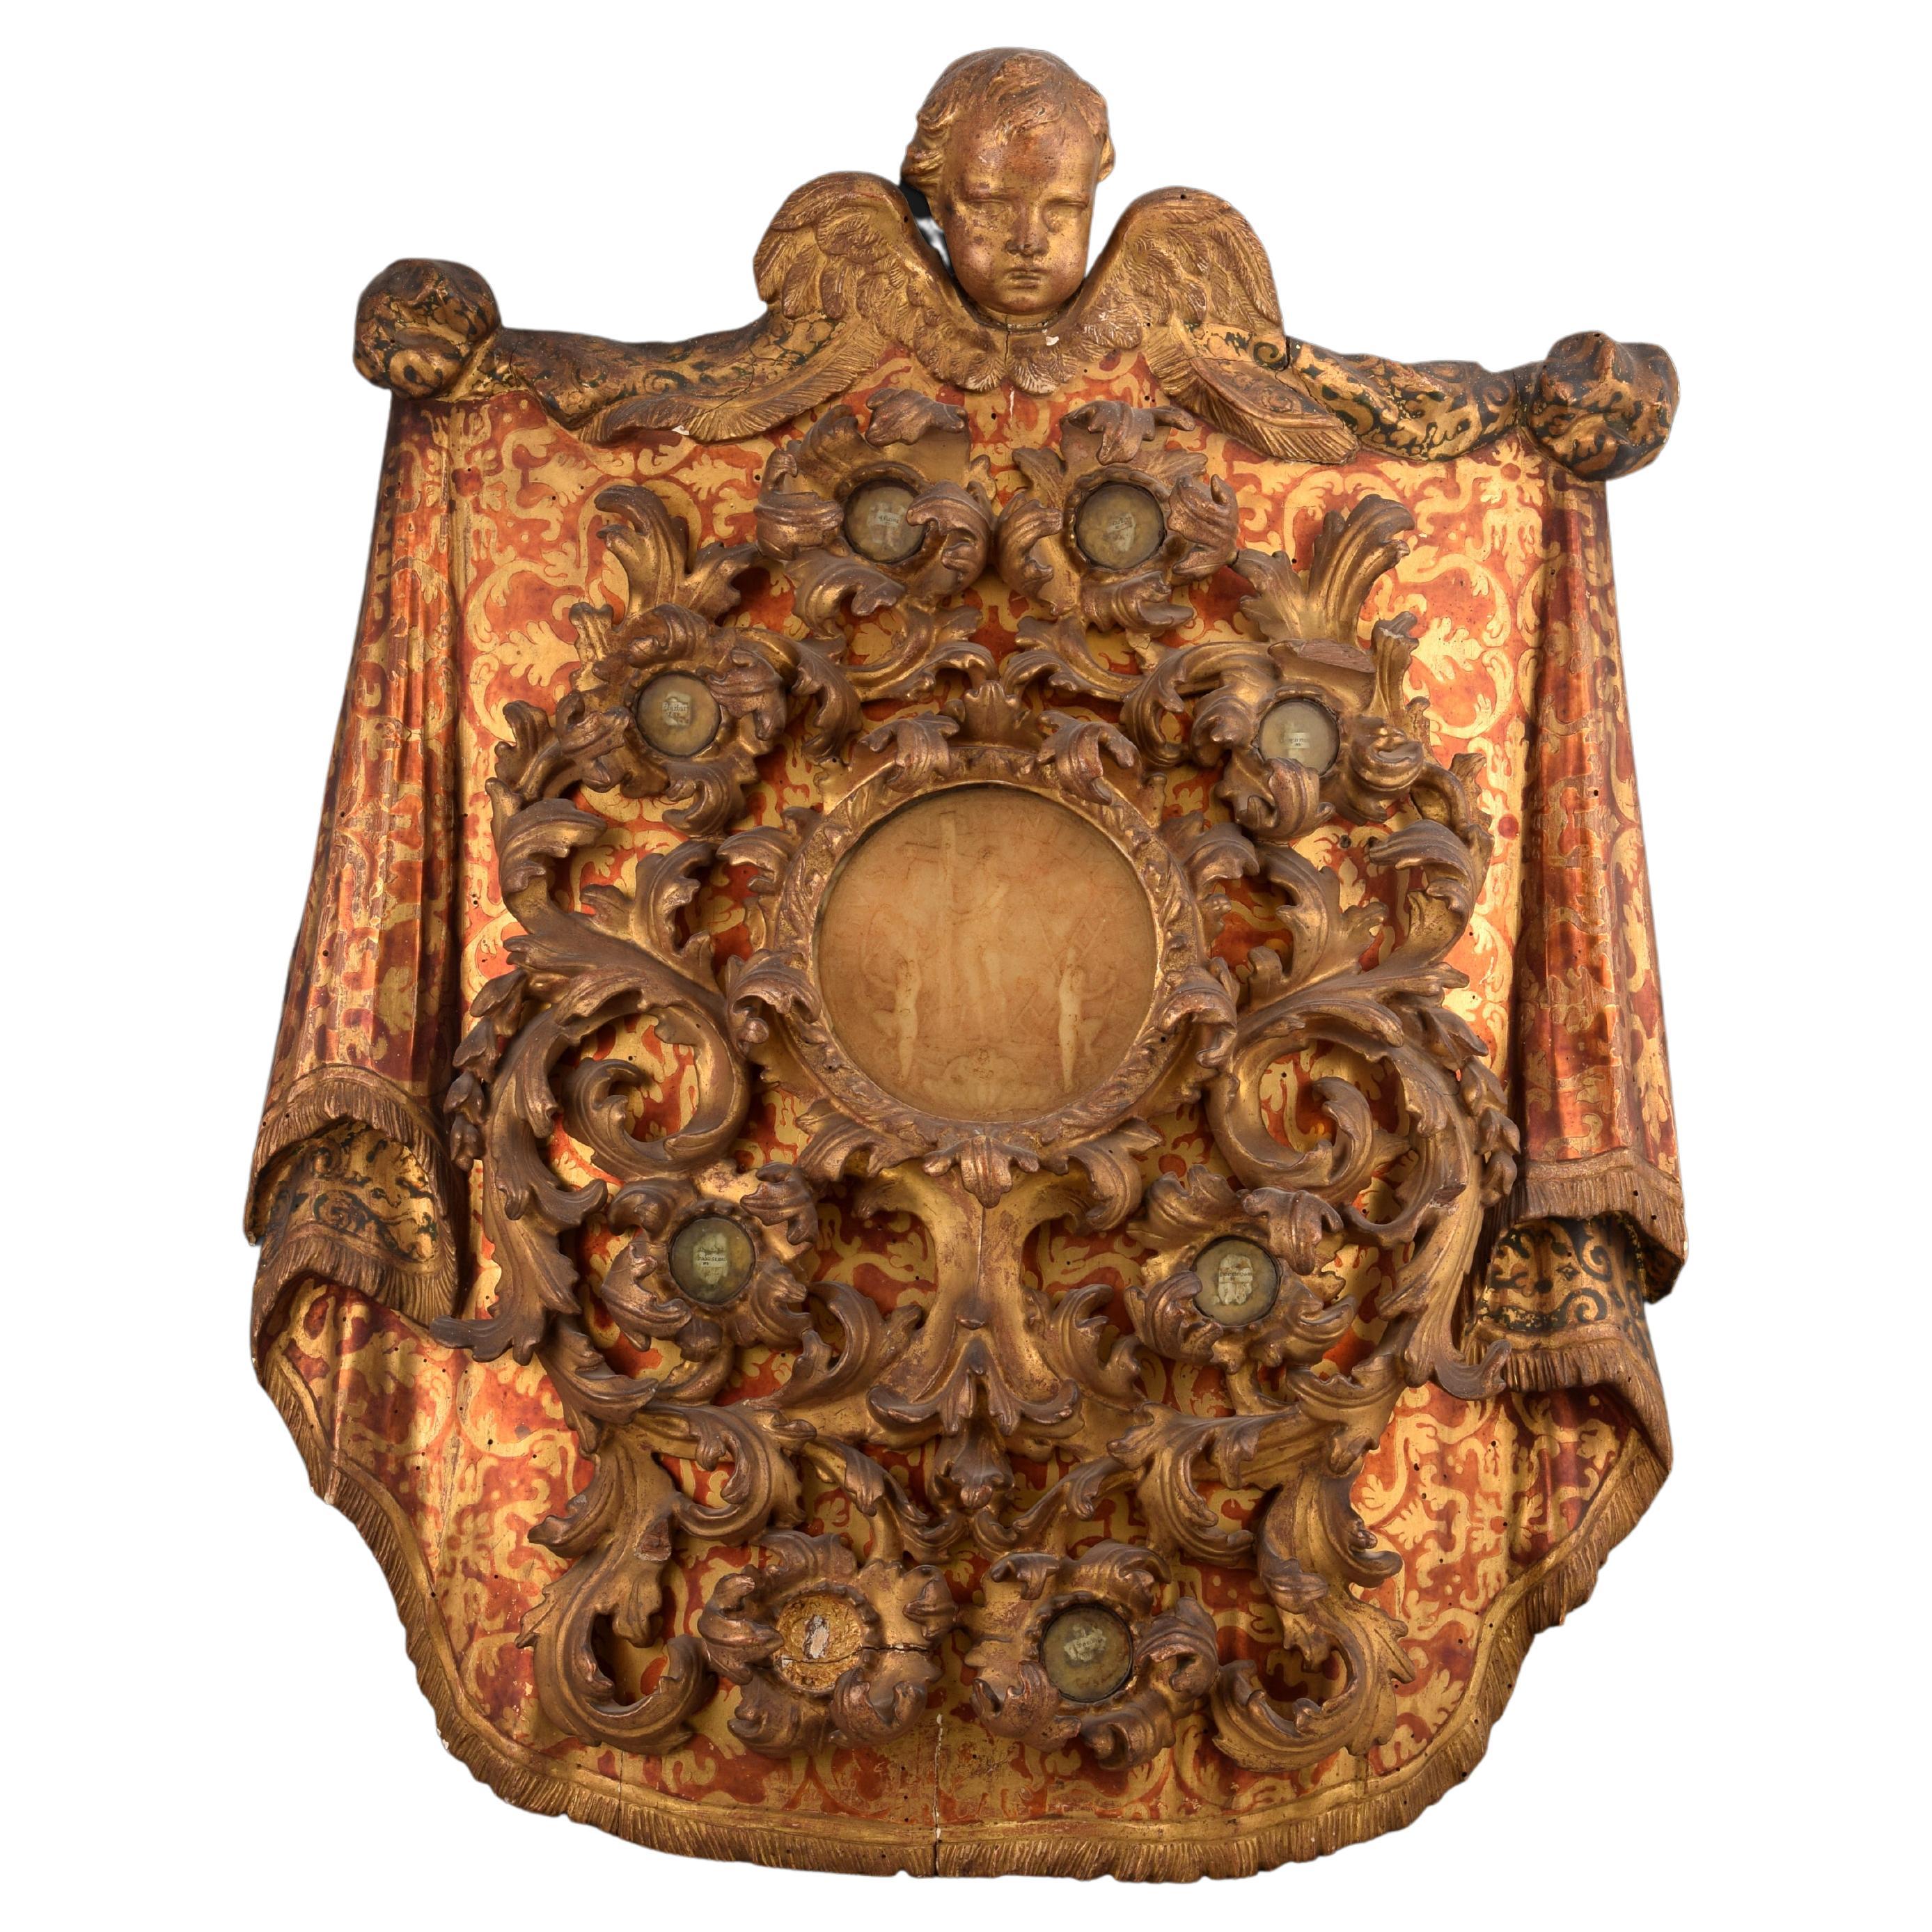 Reliquienaltar. Holz, Glas, Metall, Radierungen. Spanien, 17. Jahrhundert